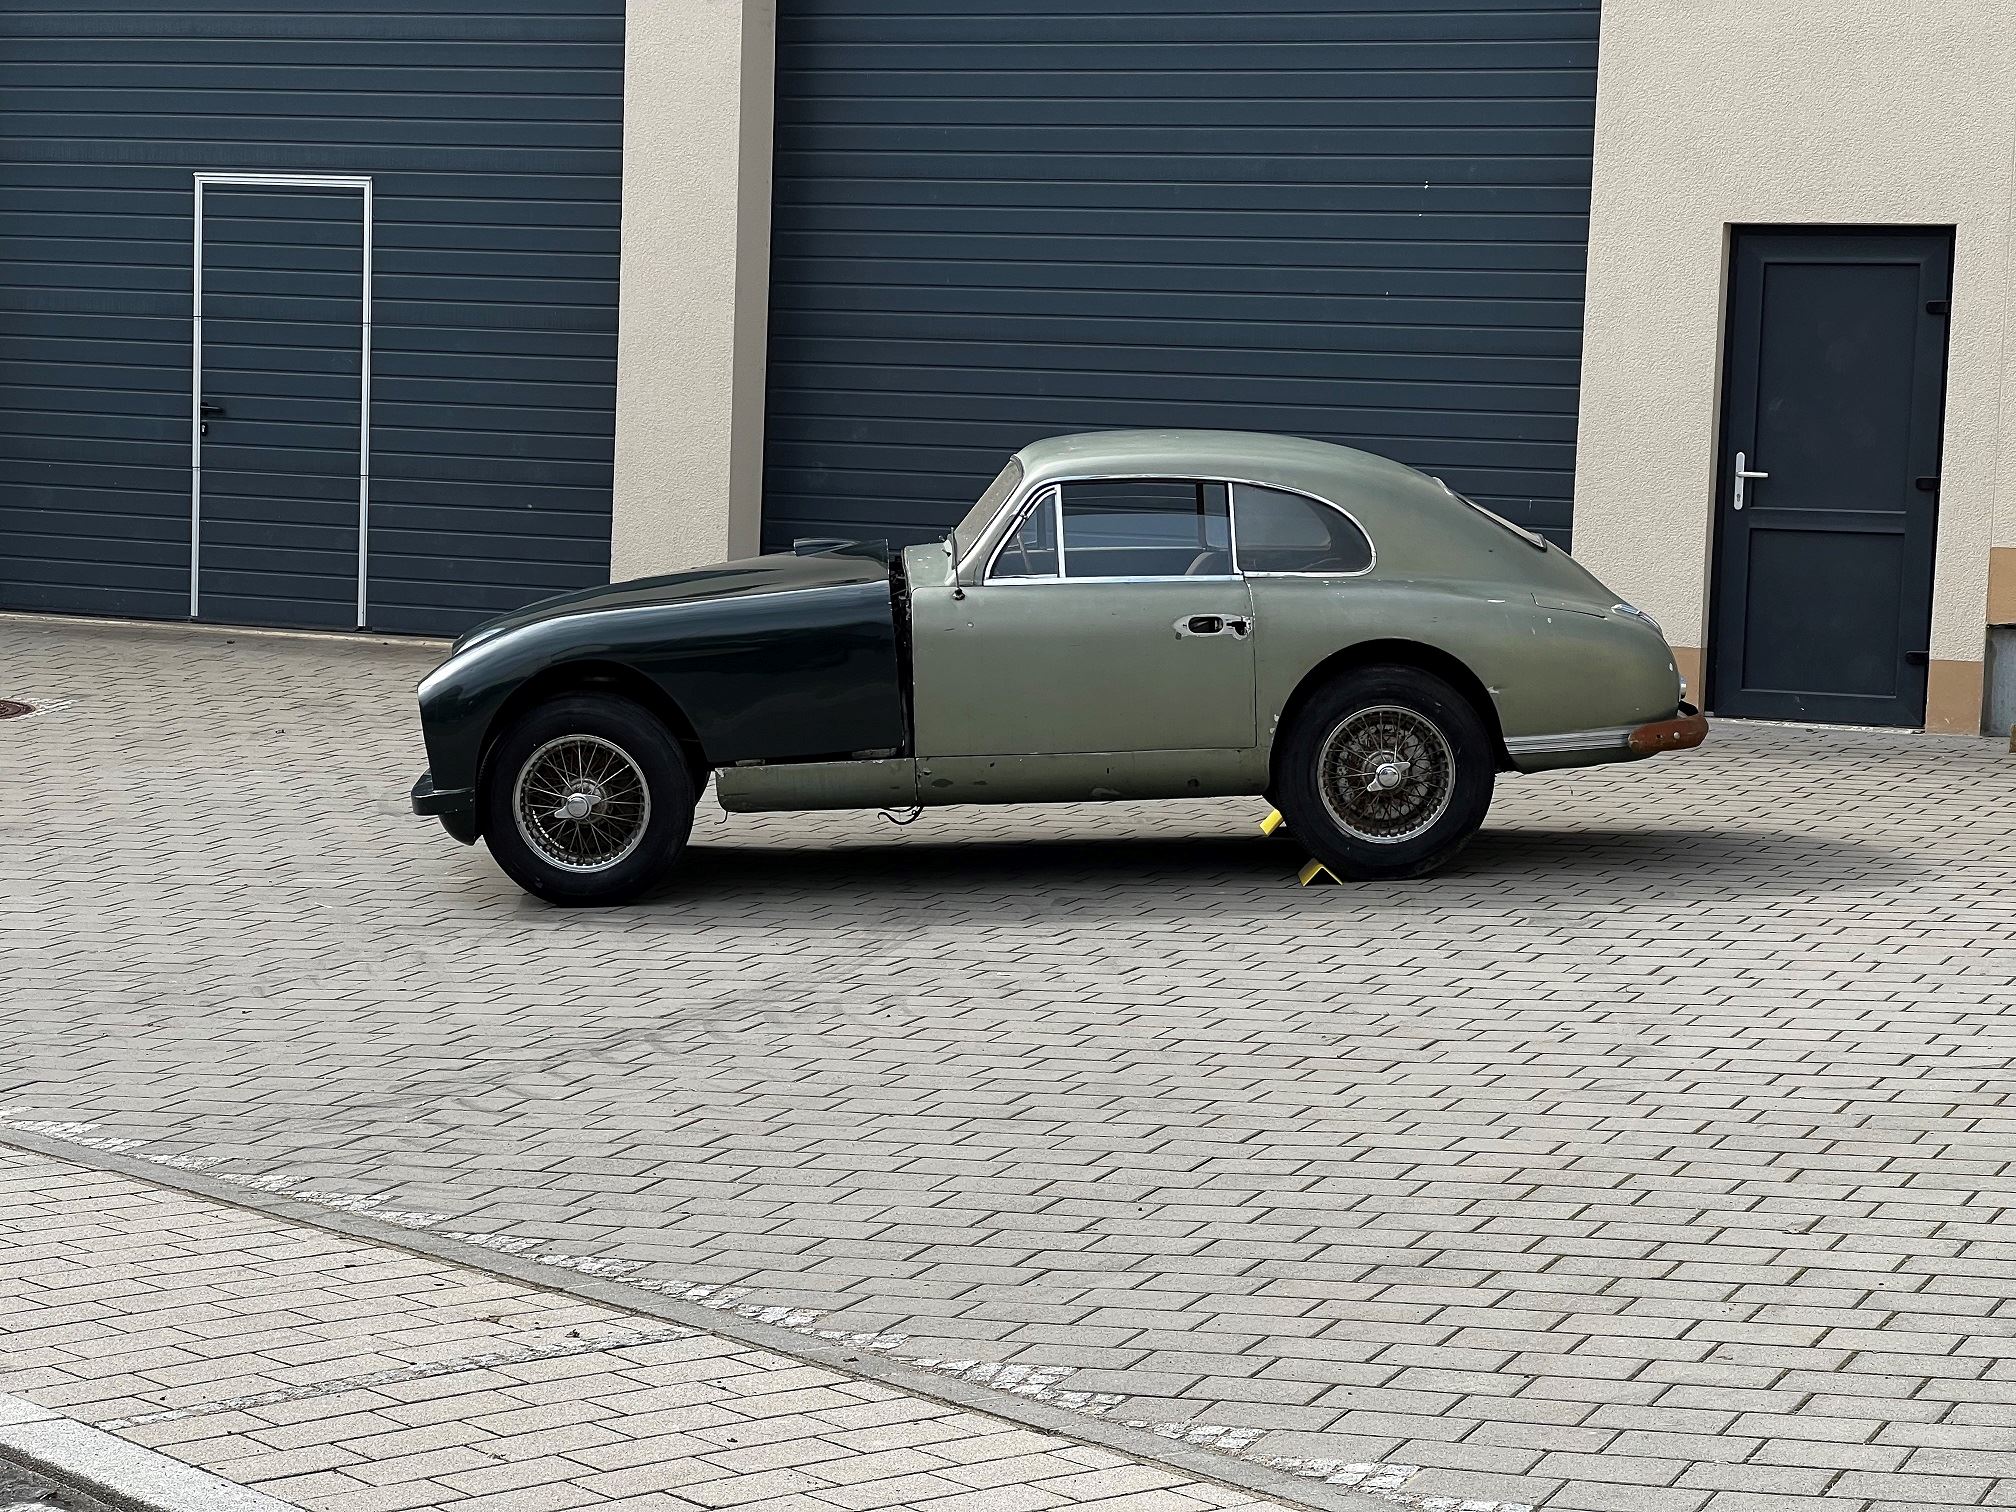 Aston martin rtnxoos7mv4zyf0atpny4